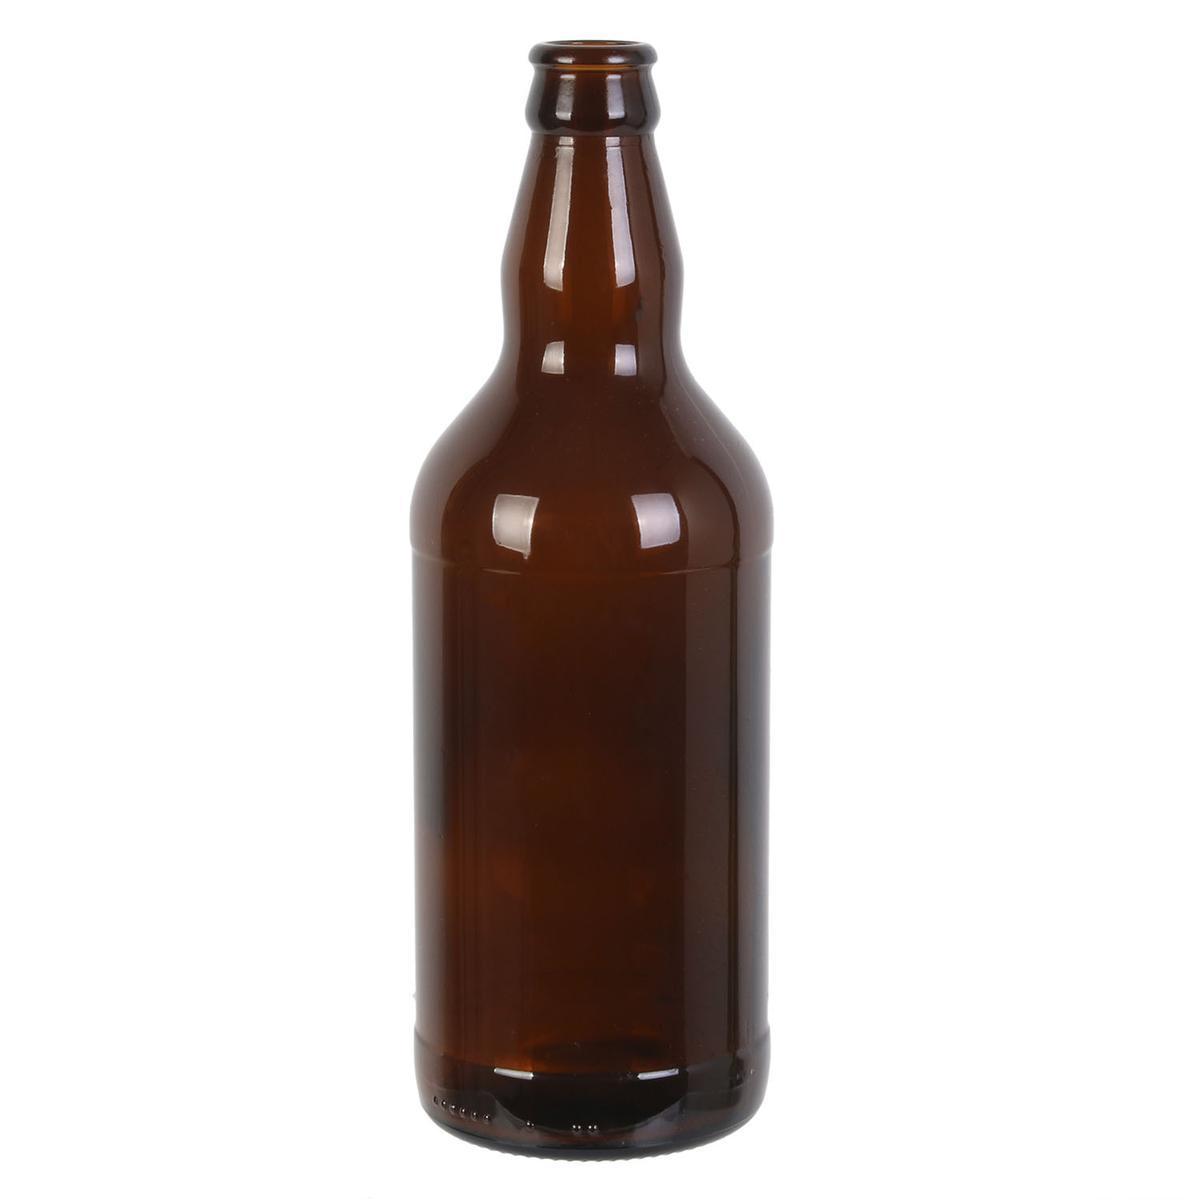 6 bouteilles de bière + capsules et étiquettes - L 7.5 x H 22.5 x l 7.5 cm - Marron - COOK CONCEPT